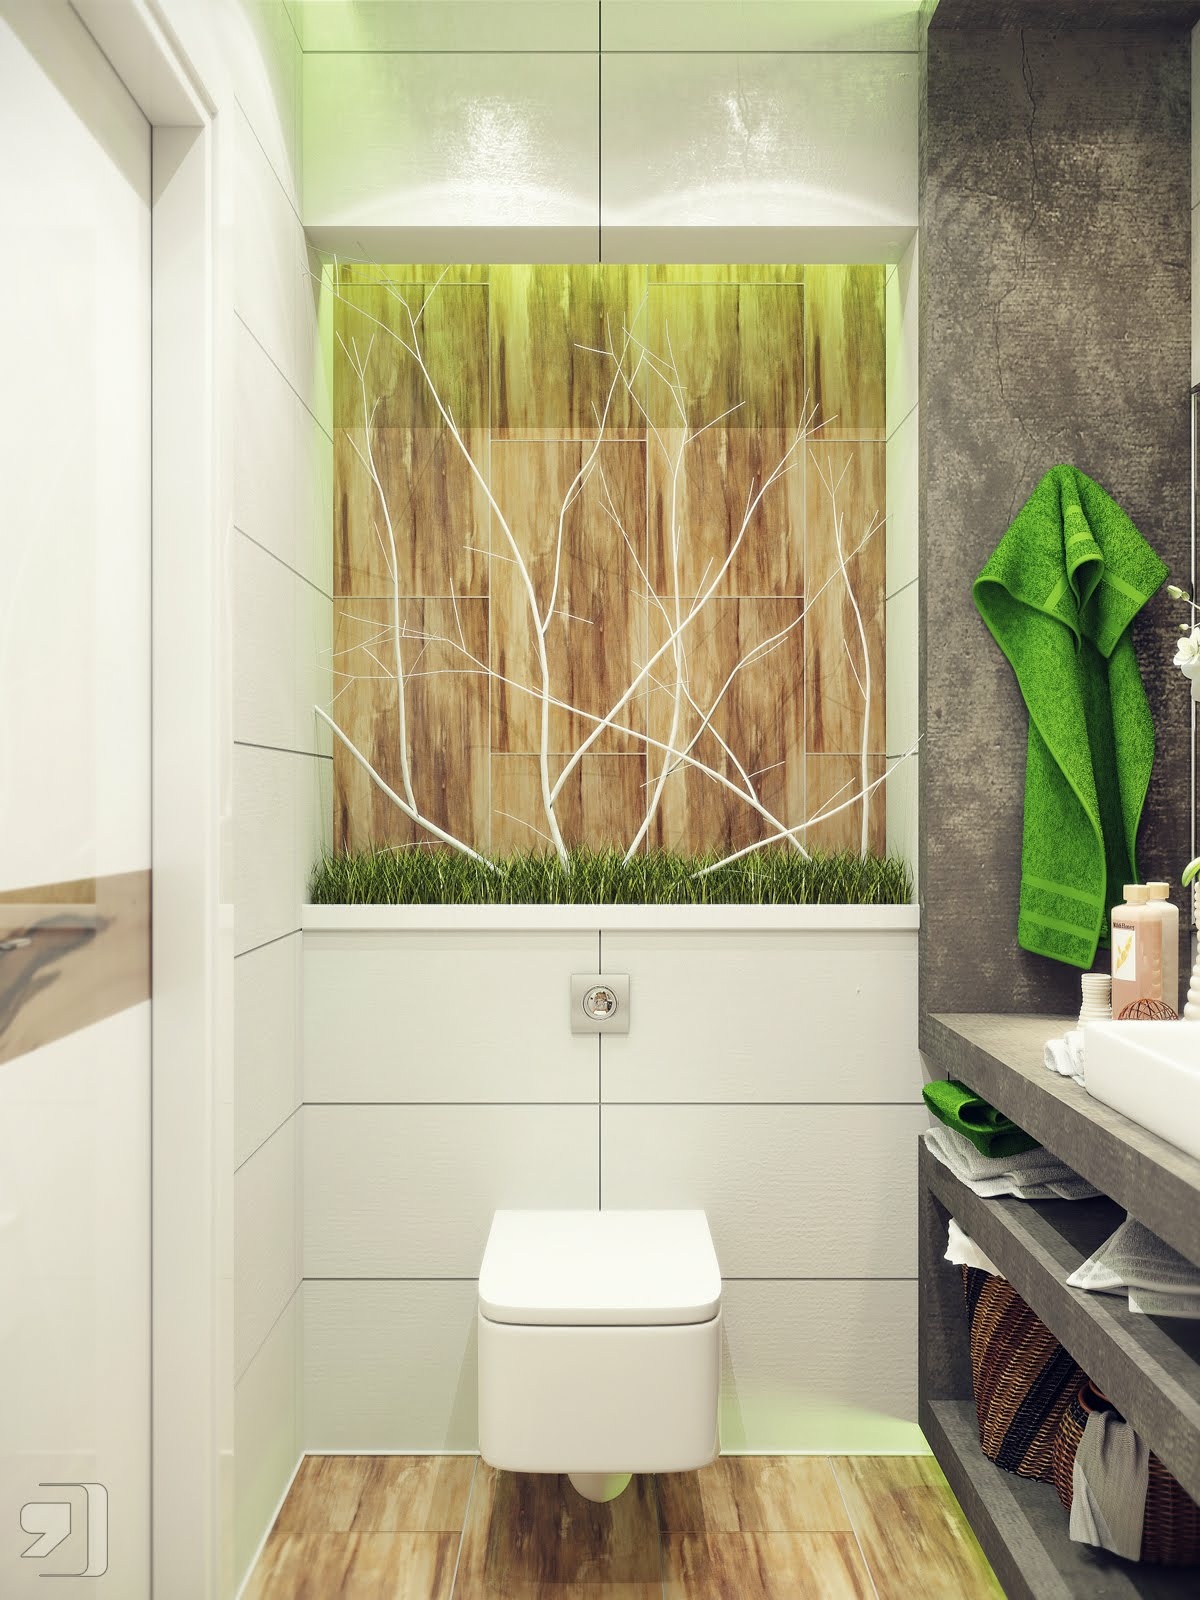 Hình ảnh thiết kế phòng tắm với lượng ánh sáng đạt chuẩn